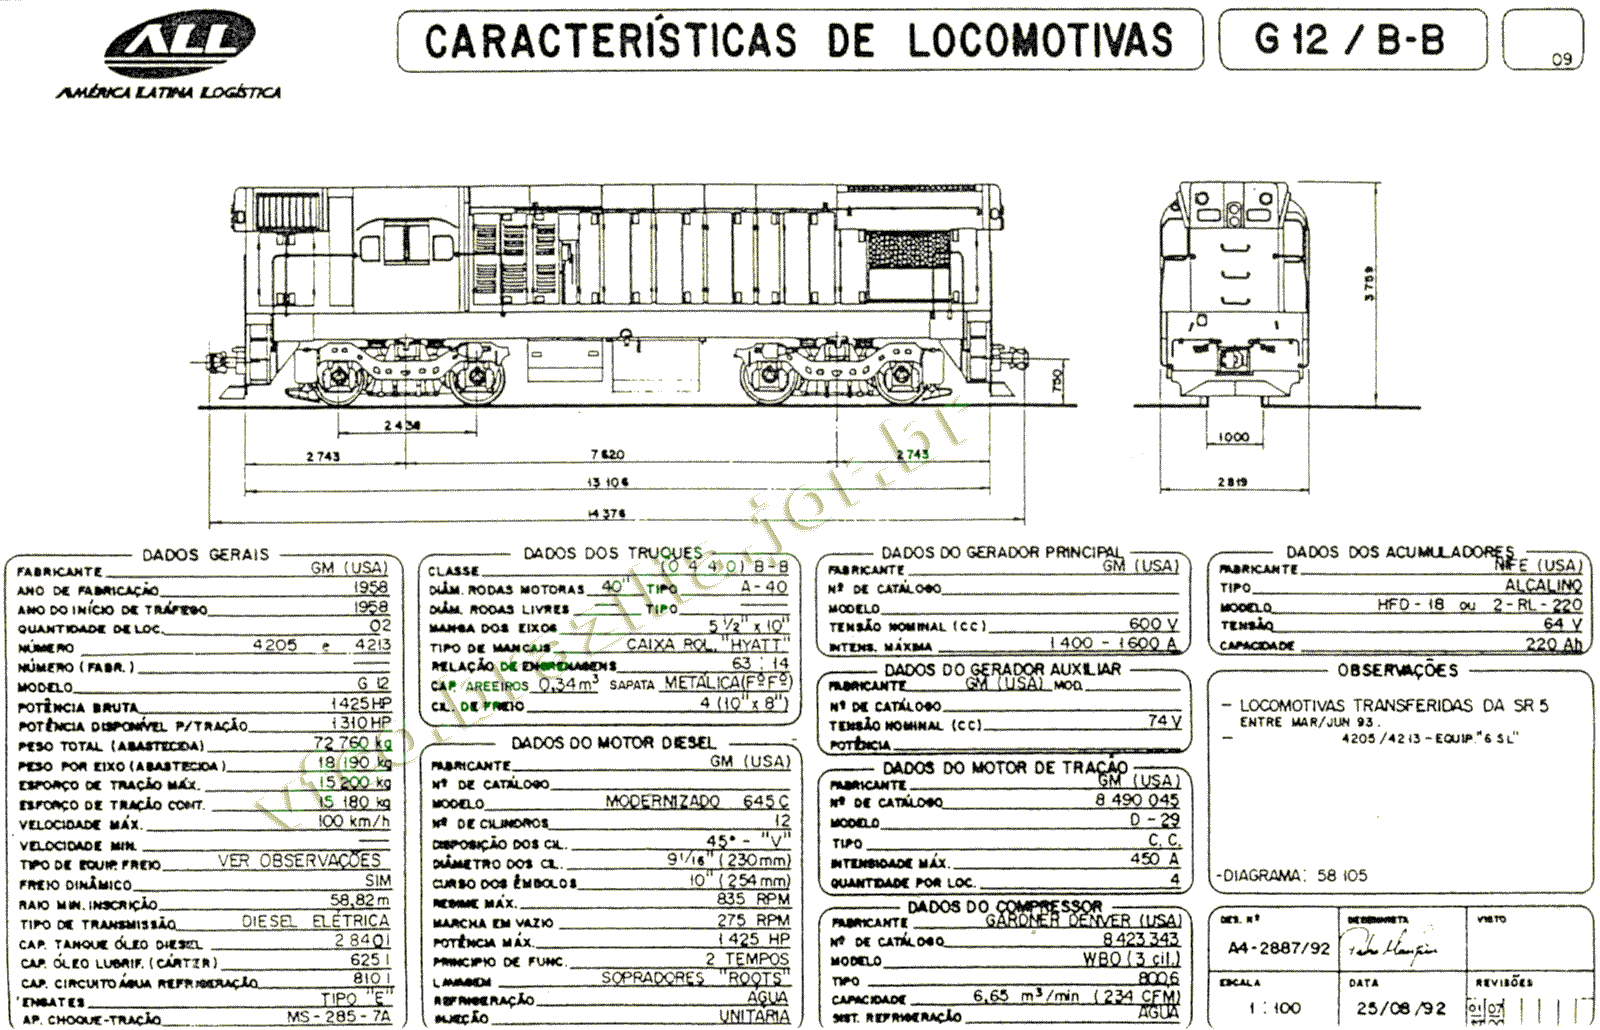 Dimensões e características das Locomotivas G12 nº 4205-4213 da ferrovia ALL